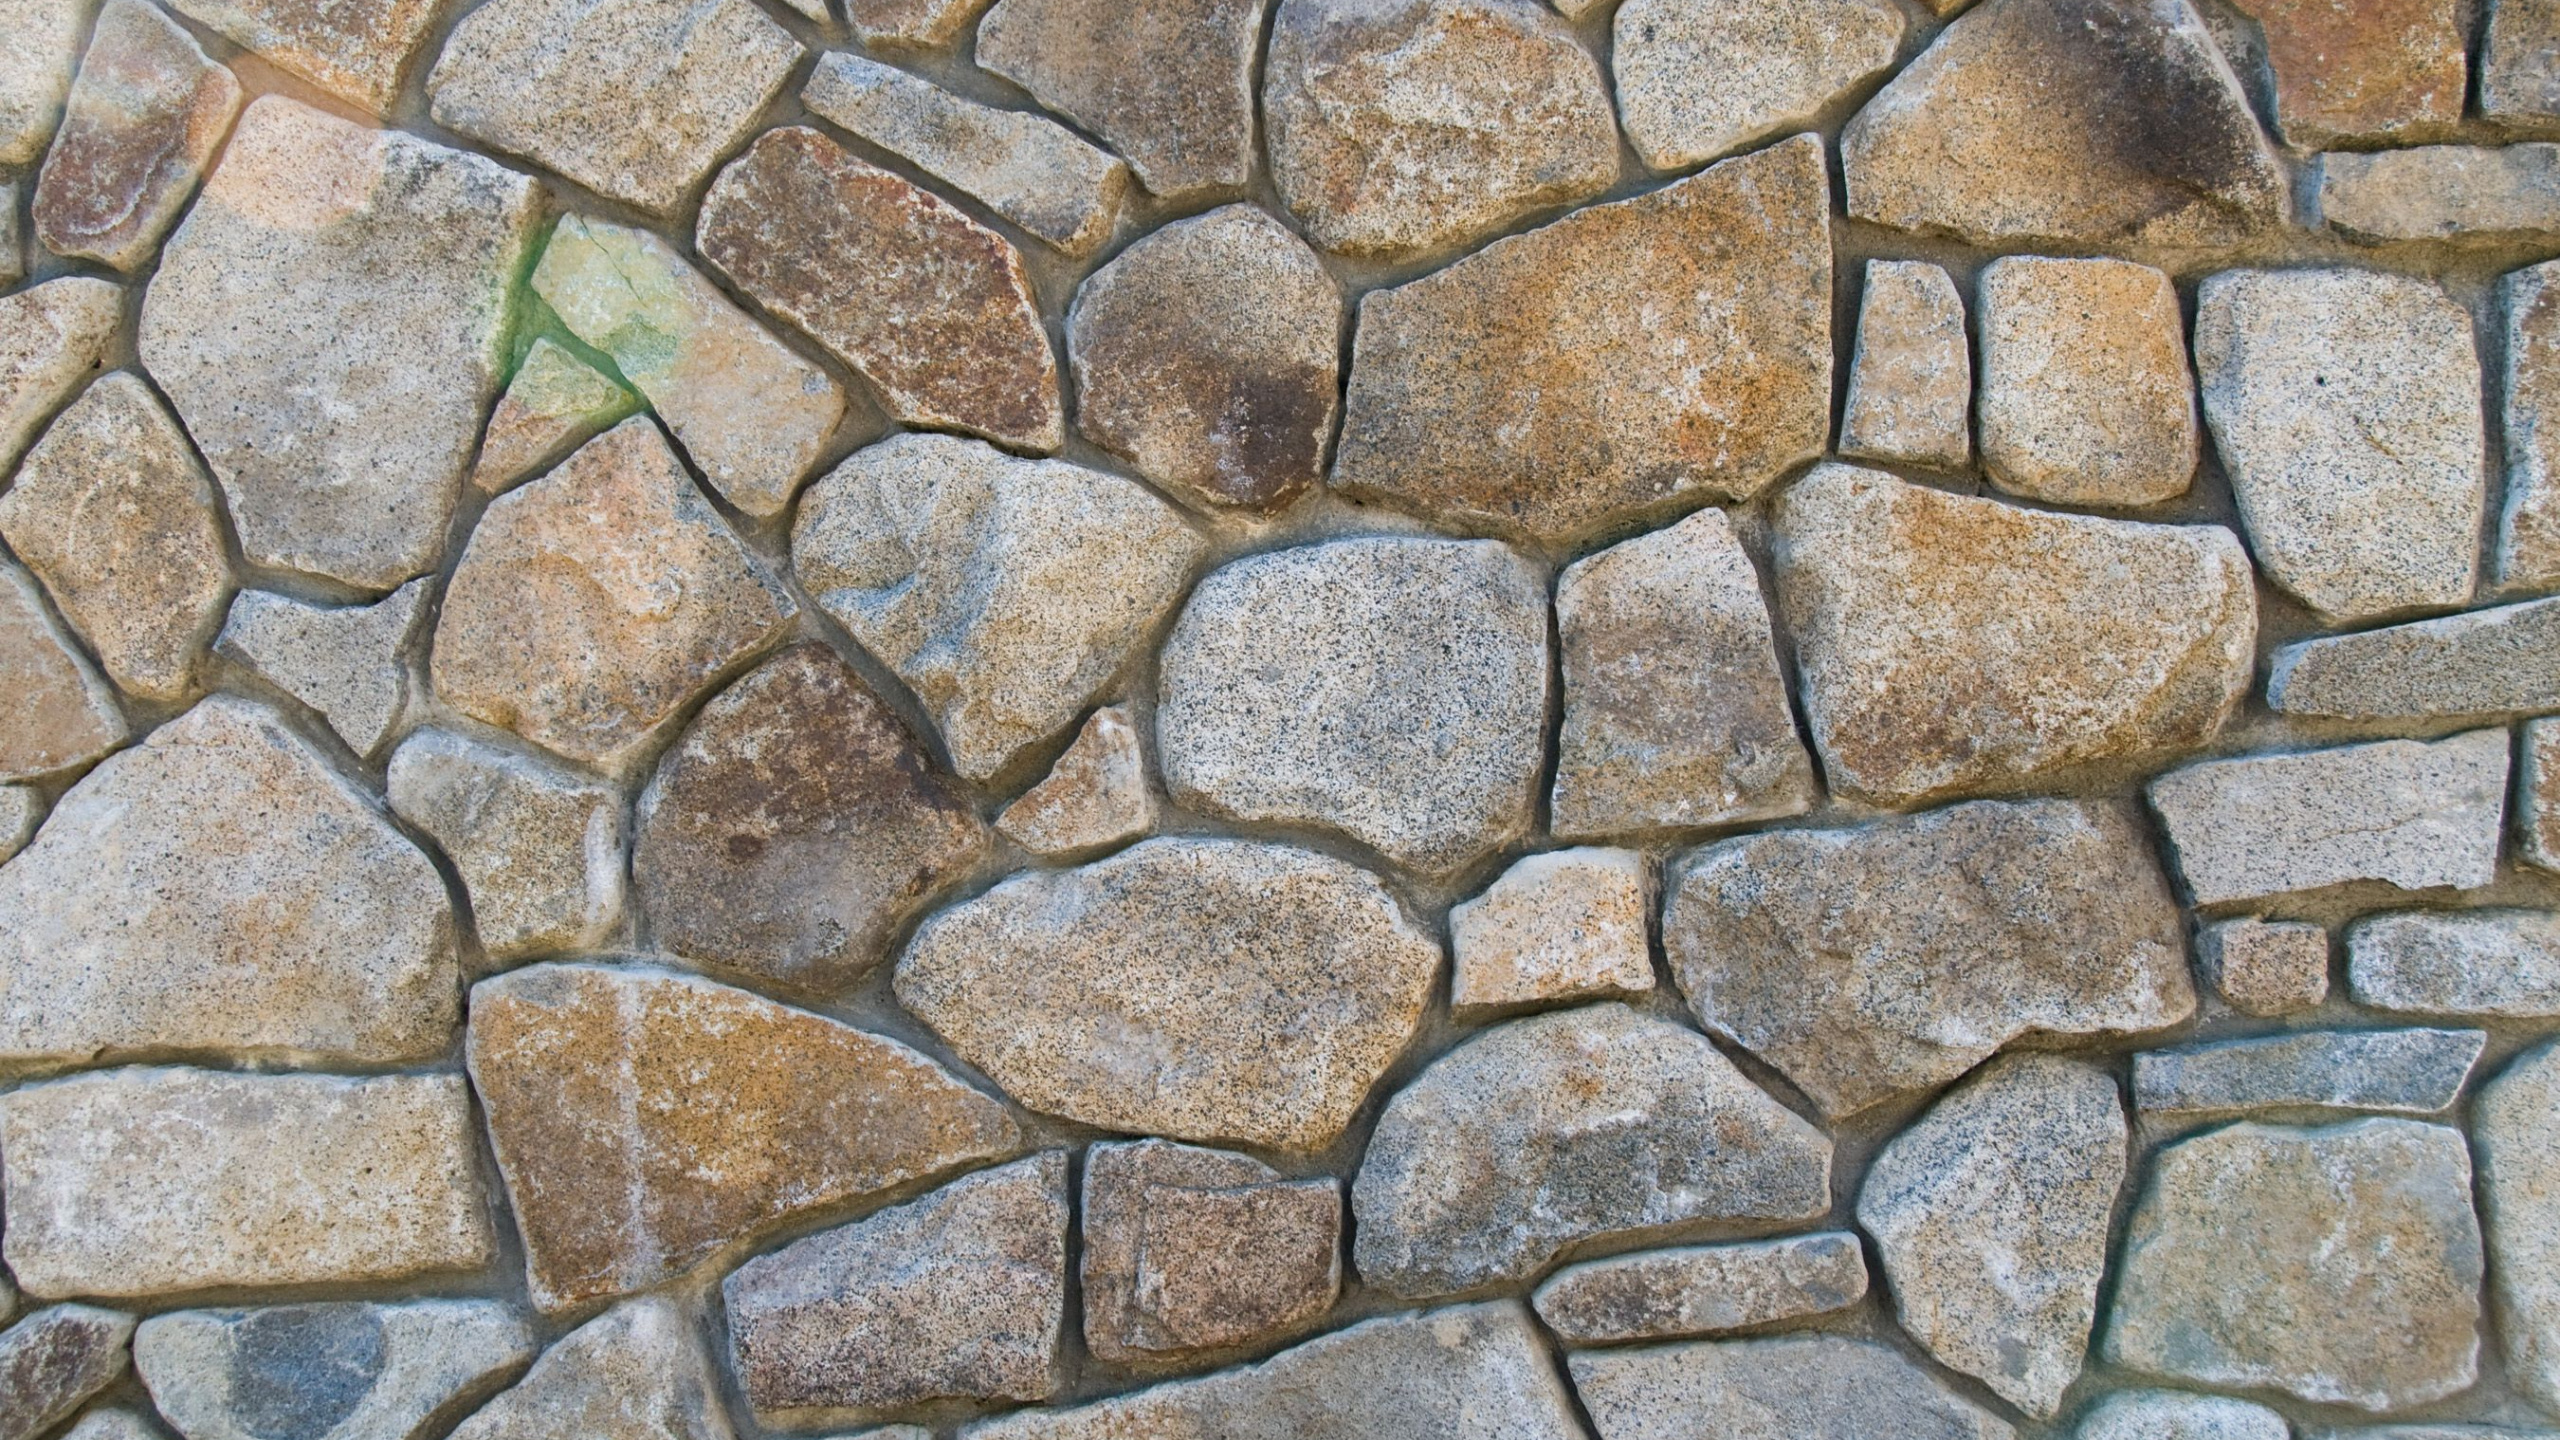 石壁, 砖, 鹅卵石, 废墟, 砖石 壁纸 2560x1440 允许